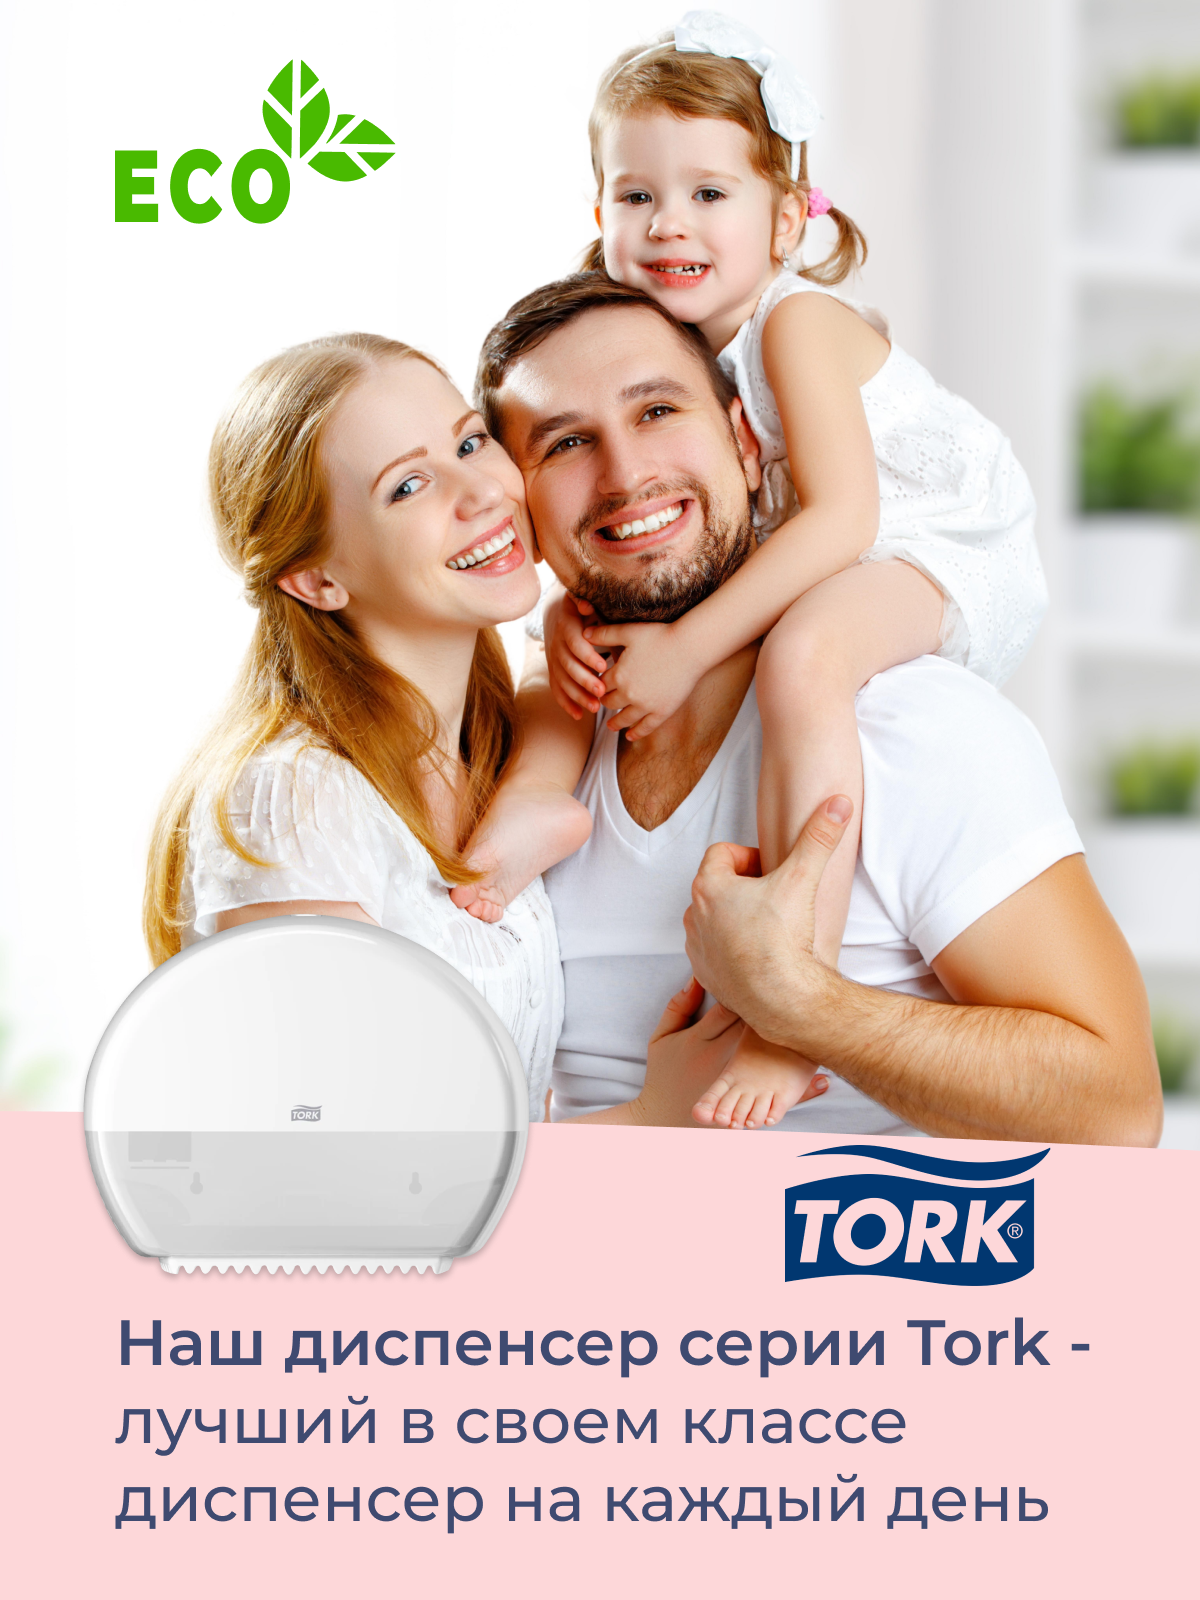 Диспенсер для туалетной бумаги TORK - фото №13